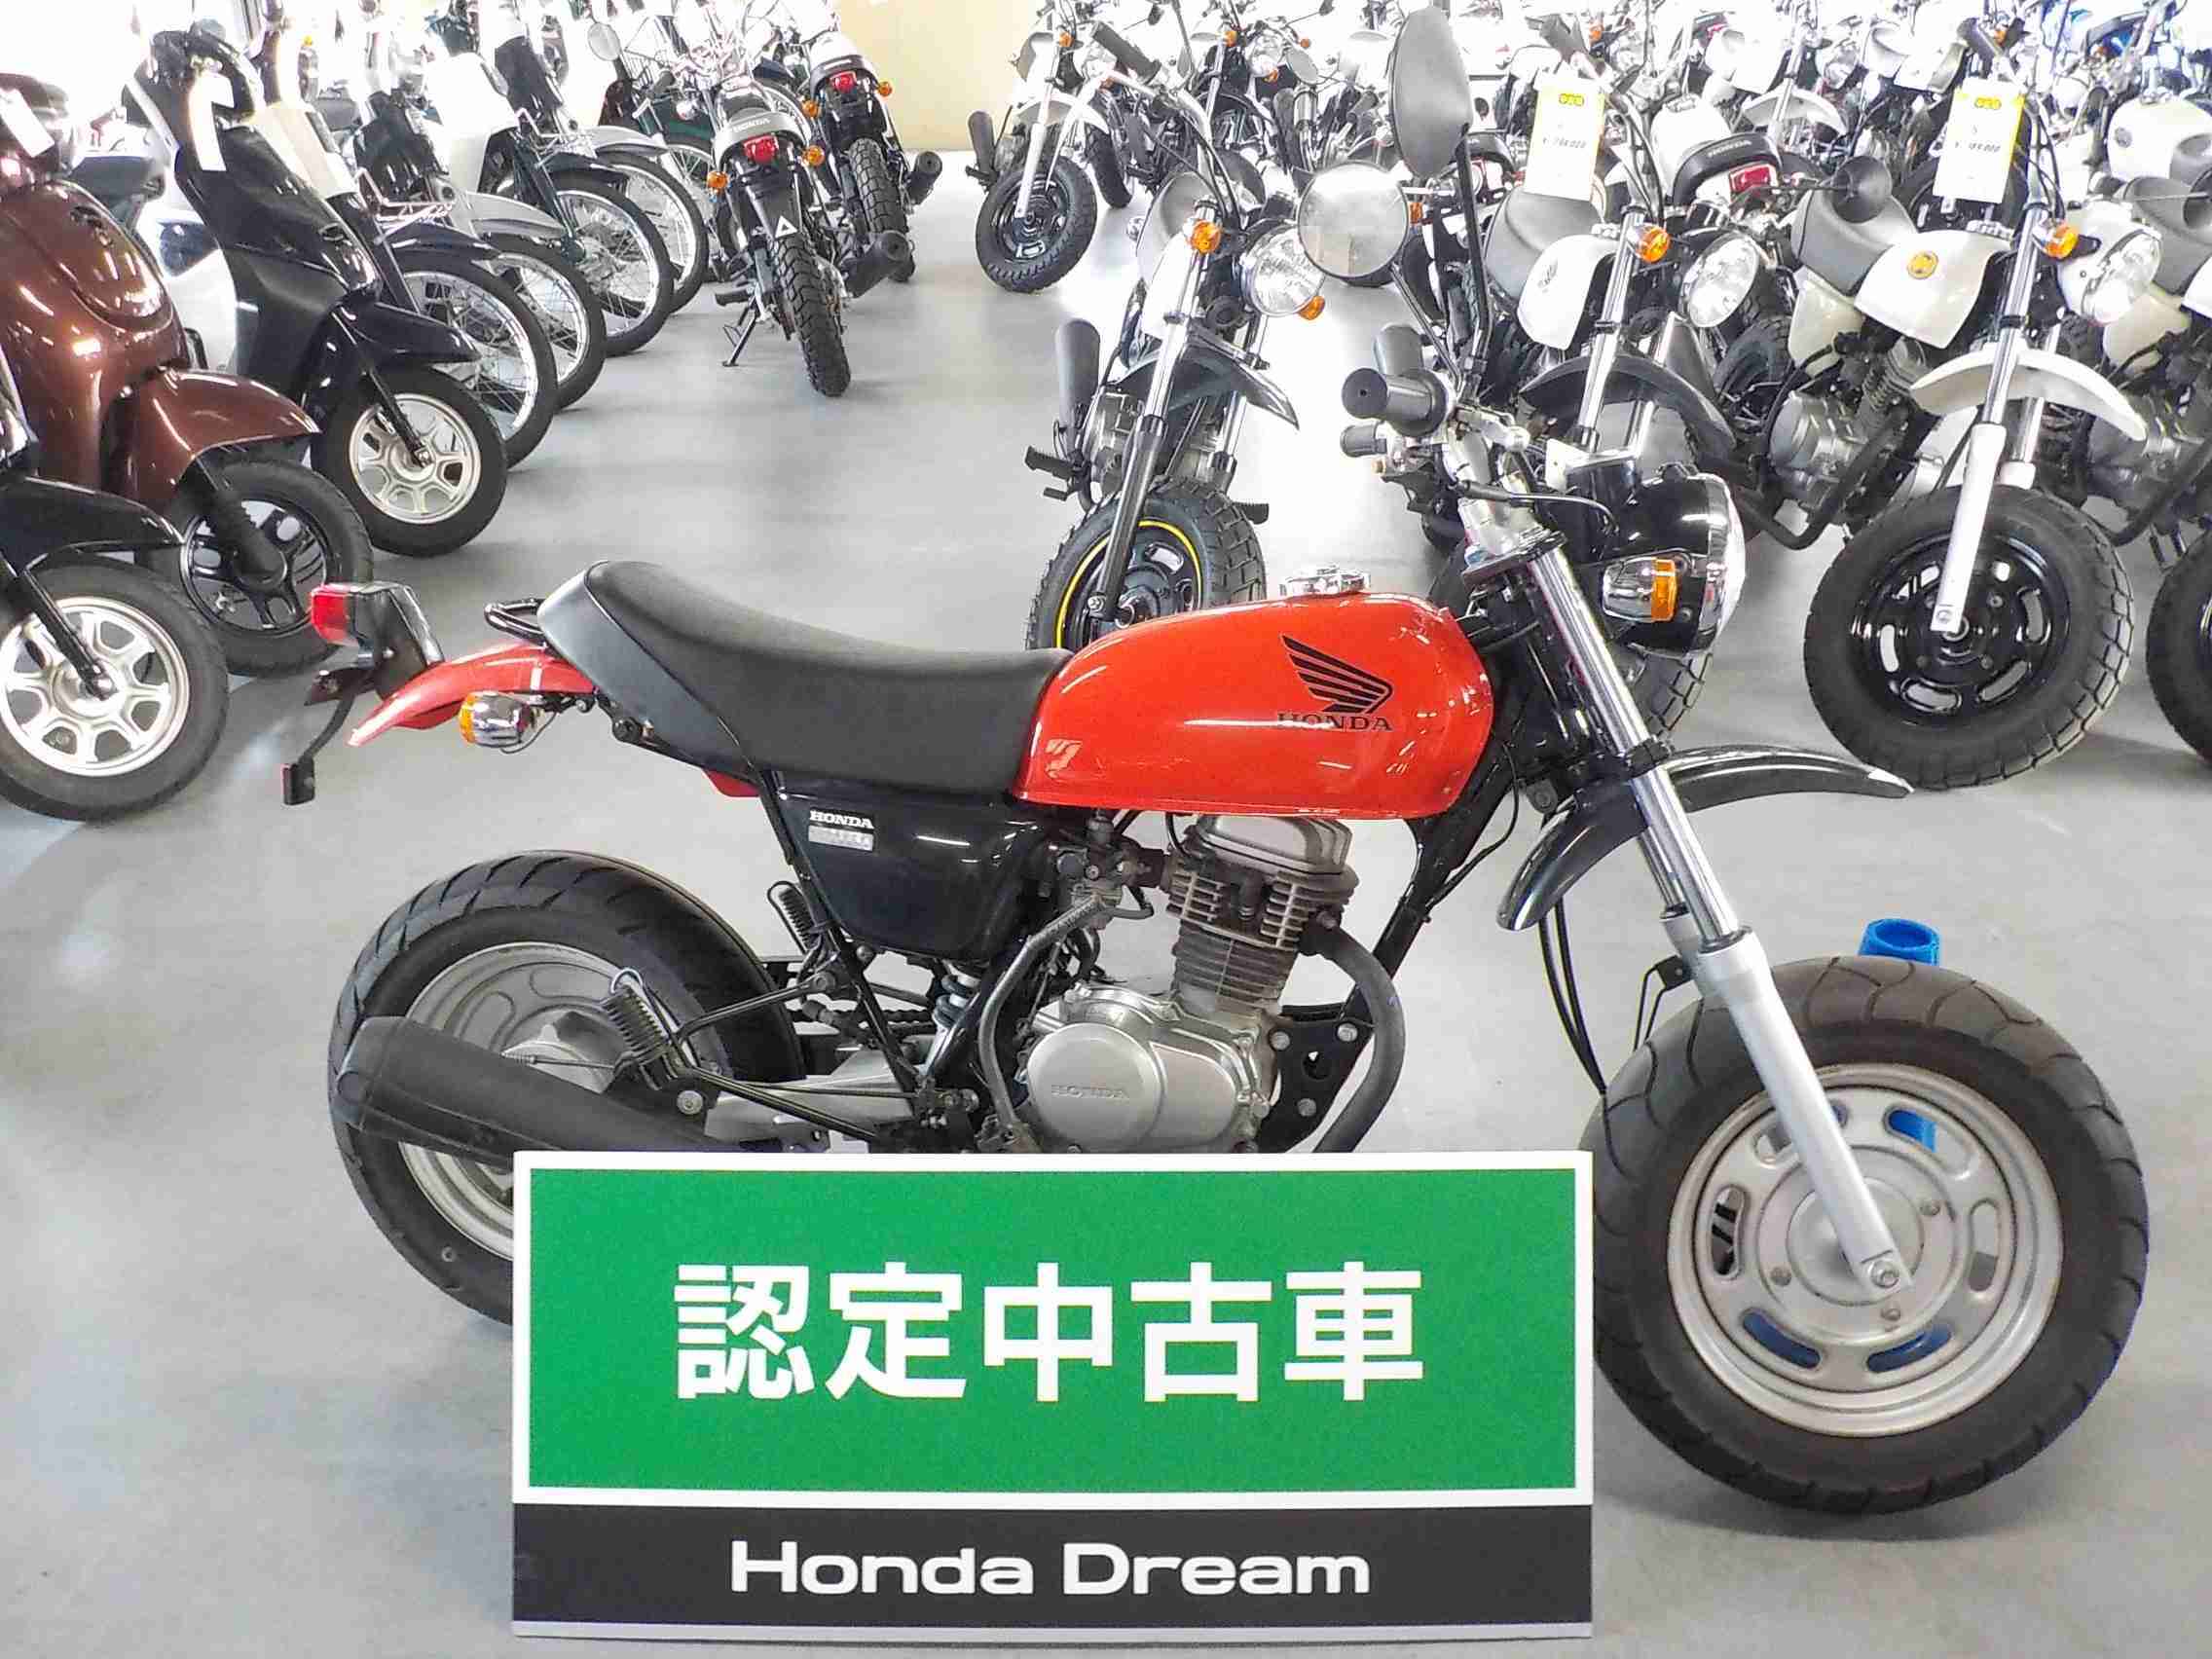 ホンダ エイプ100 バイク探し U Media ユーメディア 中古バイク 新車 バイク探しの決定版 神奈川 東京でバイク探すならユーメディア